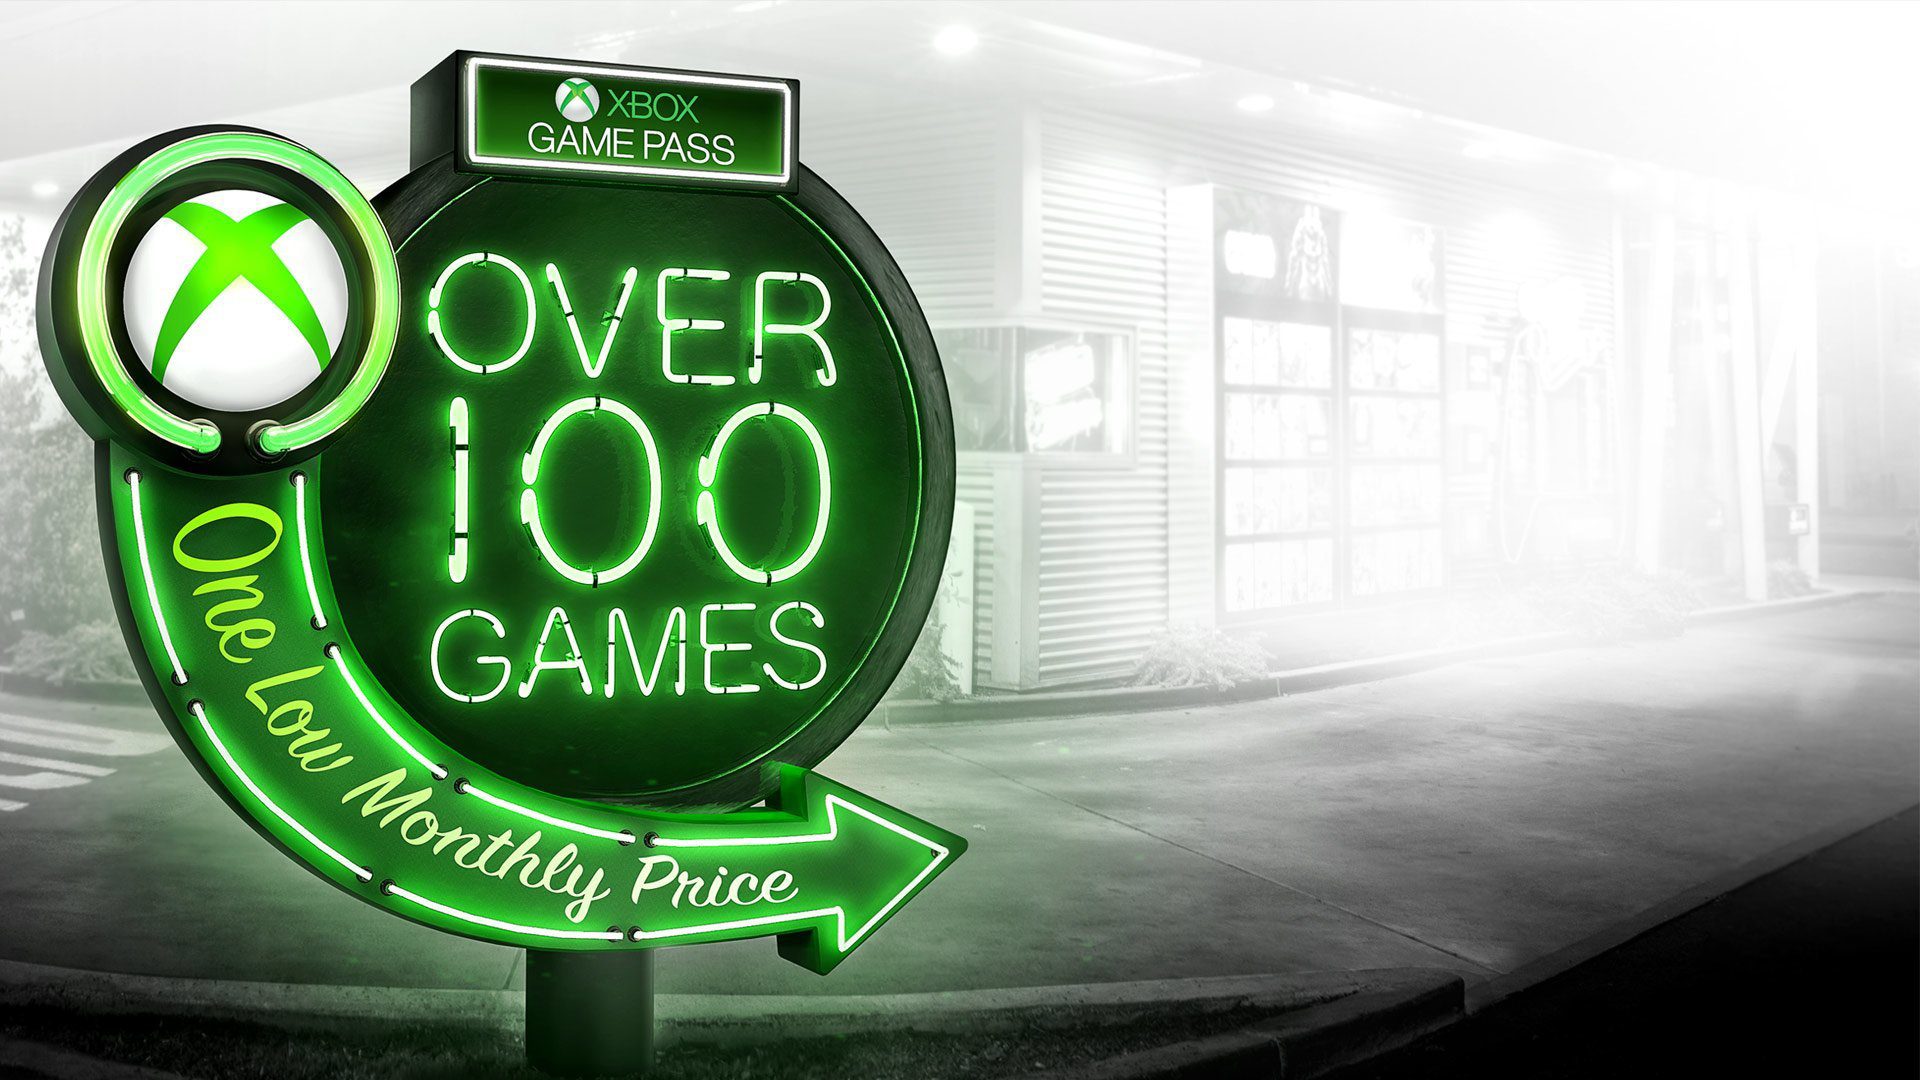 15 weitere Spiele kommen bald zum Xbox Game Pass! Werfen wir einen Blick auf die neuen Artikel im Service 155